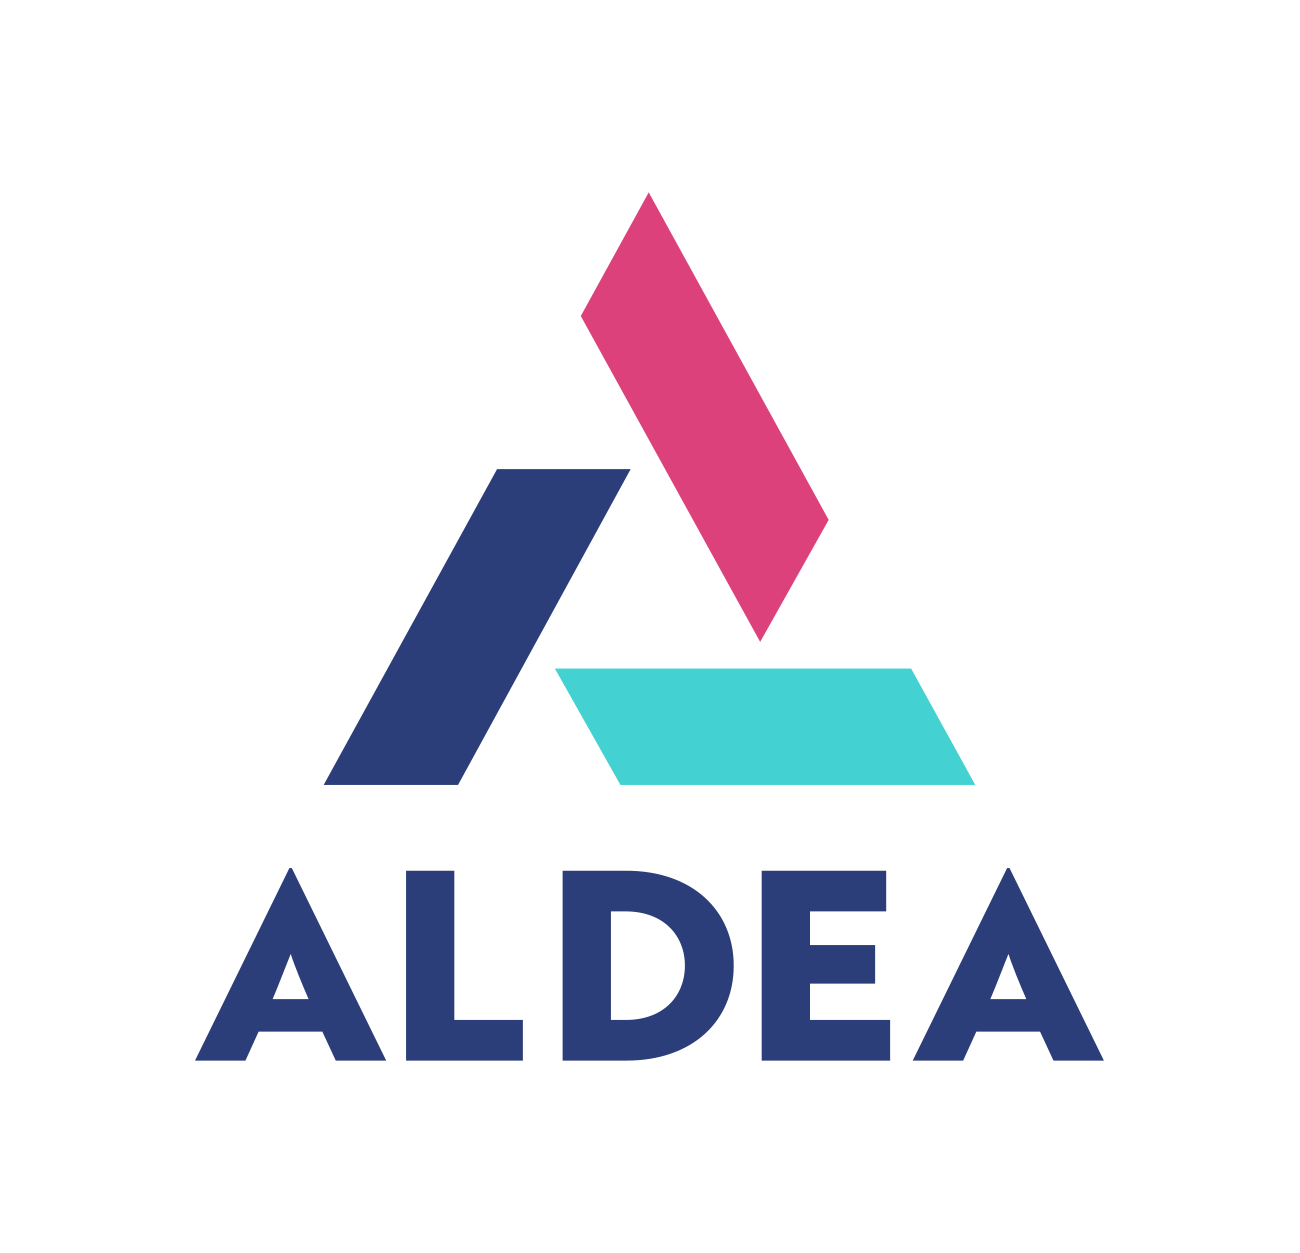 Aldea Children & Family Services